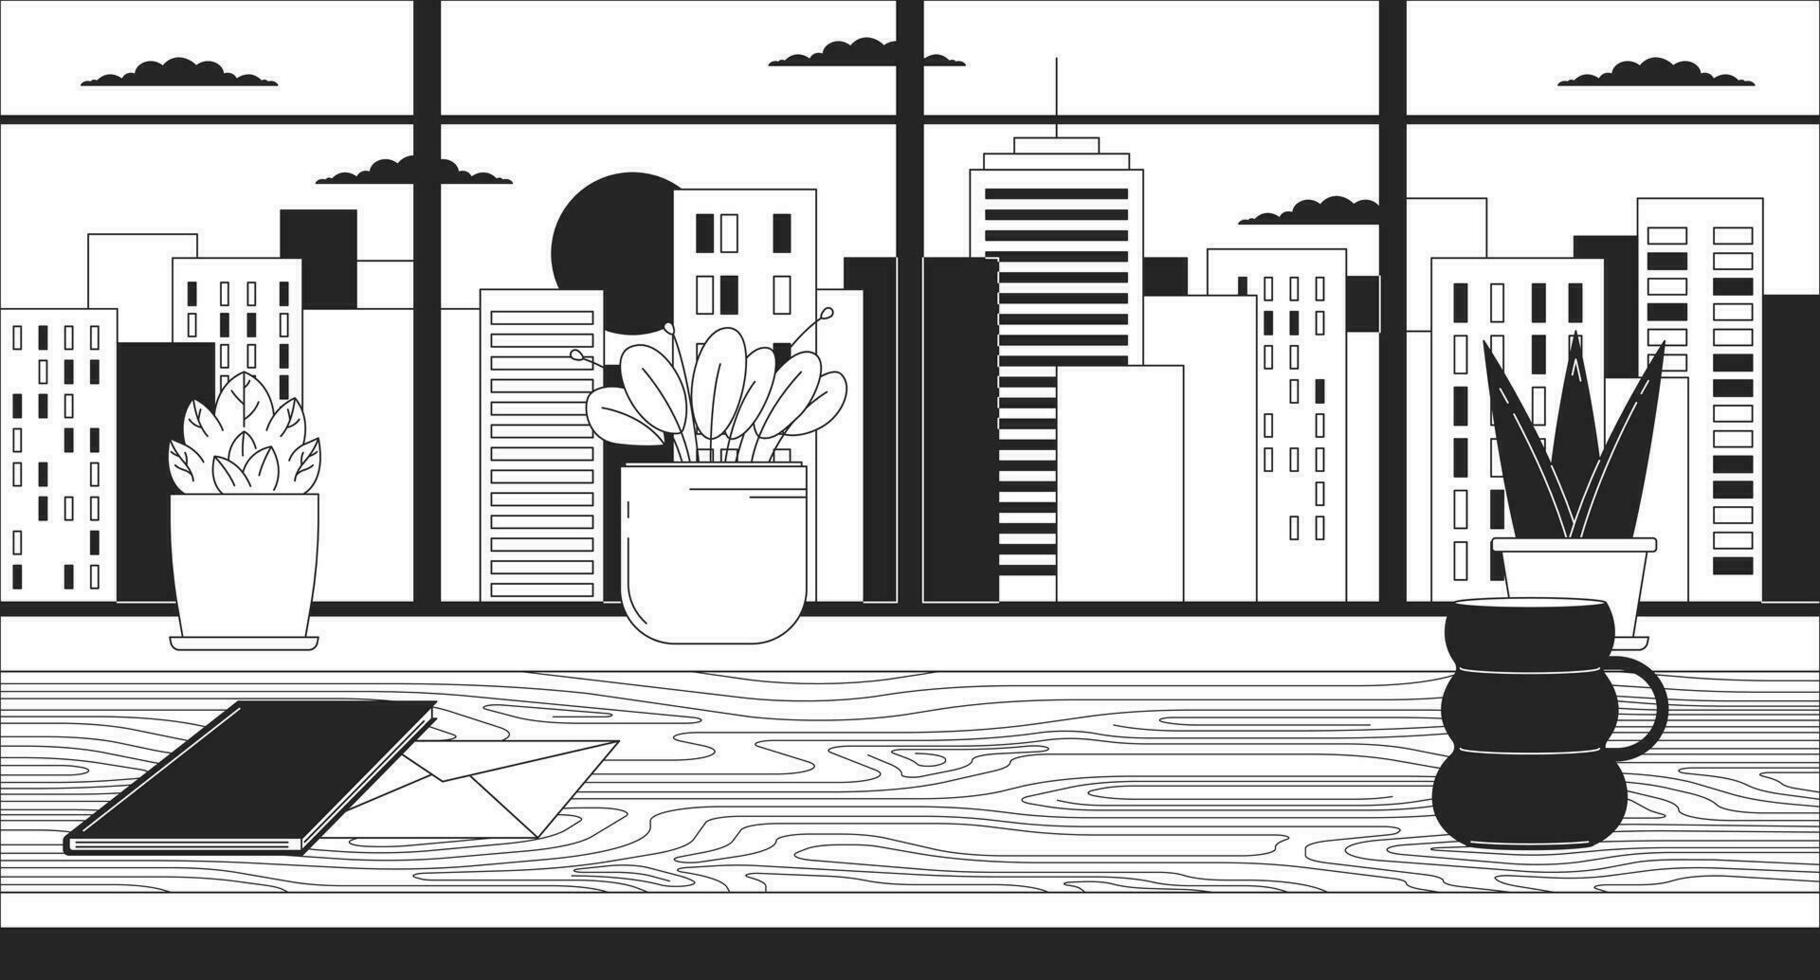 kontor skrivbord med fönster stadsbild solnedgång svart och vit lofi tapet. arbetsstation, solnedgång urban 2d översikt scen tecknad serie platt illustration. fönsterkarm växter vektor linje lo fi estetisk bakgrund